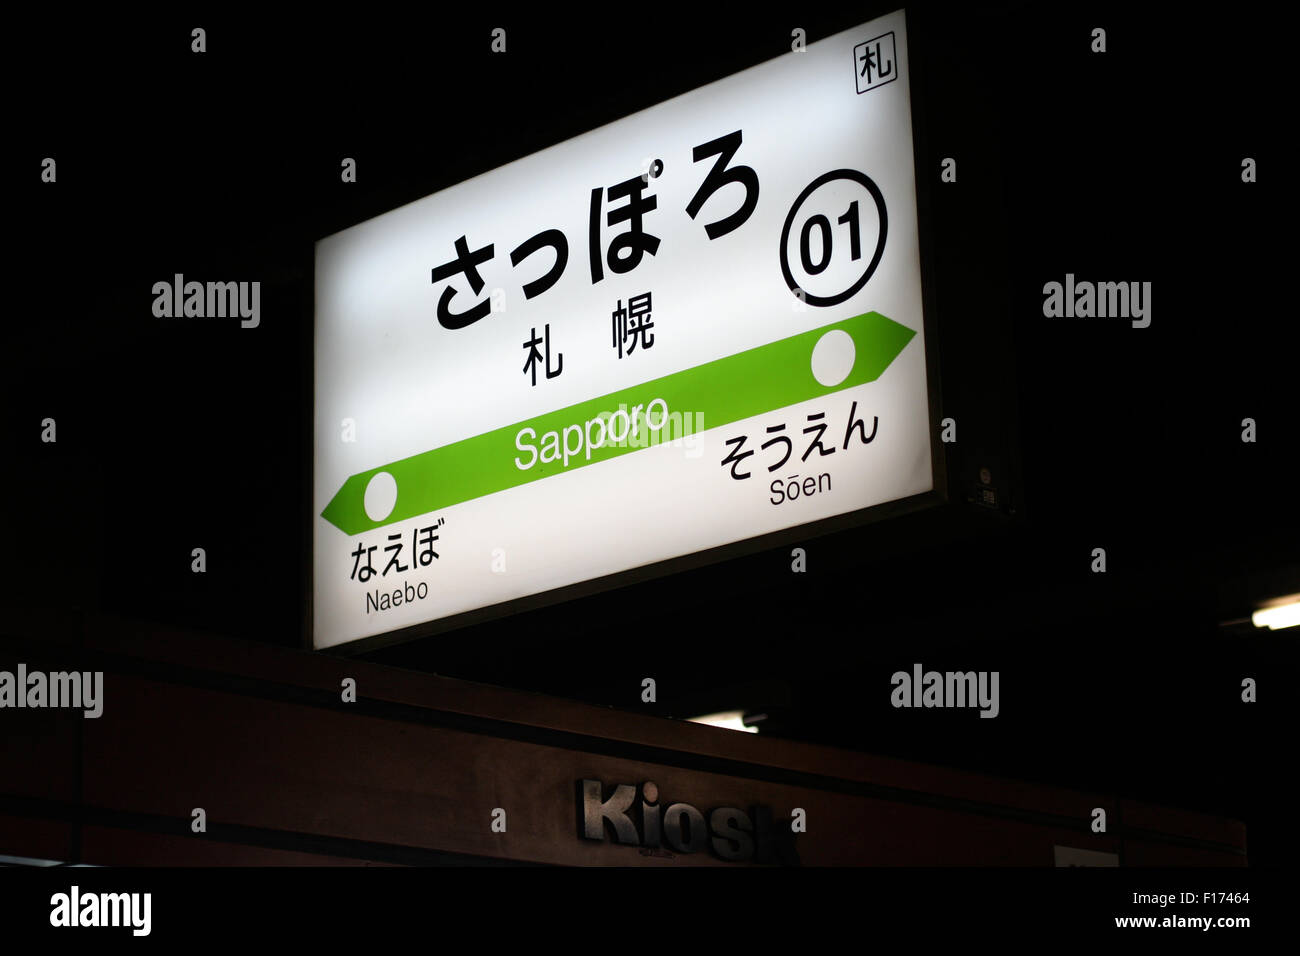 Sapporo train sign Stock Photo